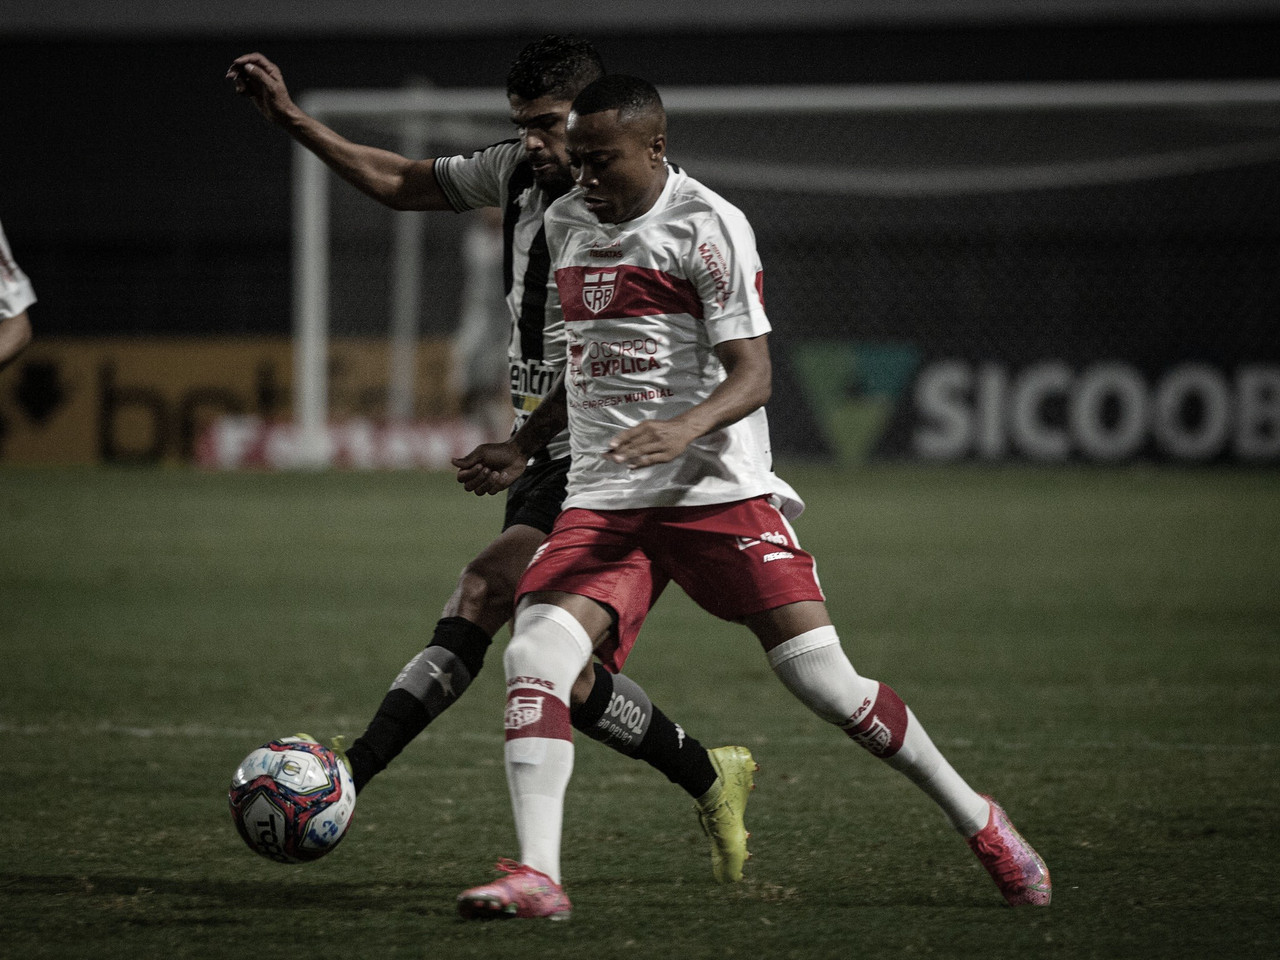 Gols e melhores momentos Botafogo x CRB pela Série B do Campeonato Brasileiro 2021 (2-0)